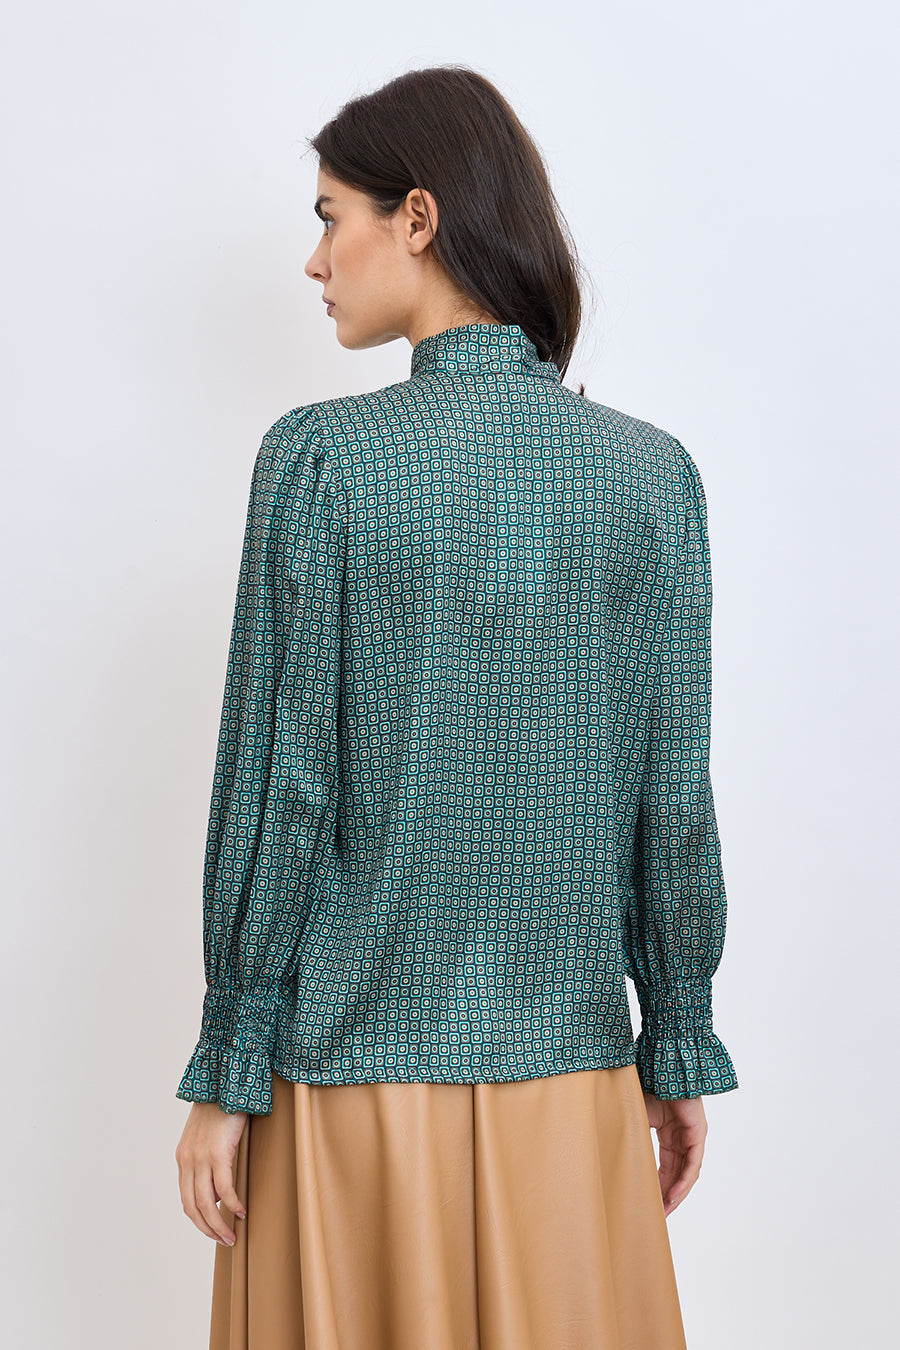 Γυναικείο πουκάμισο Isaura, Πράσινο 3